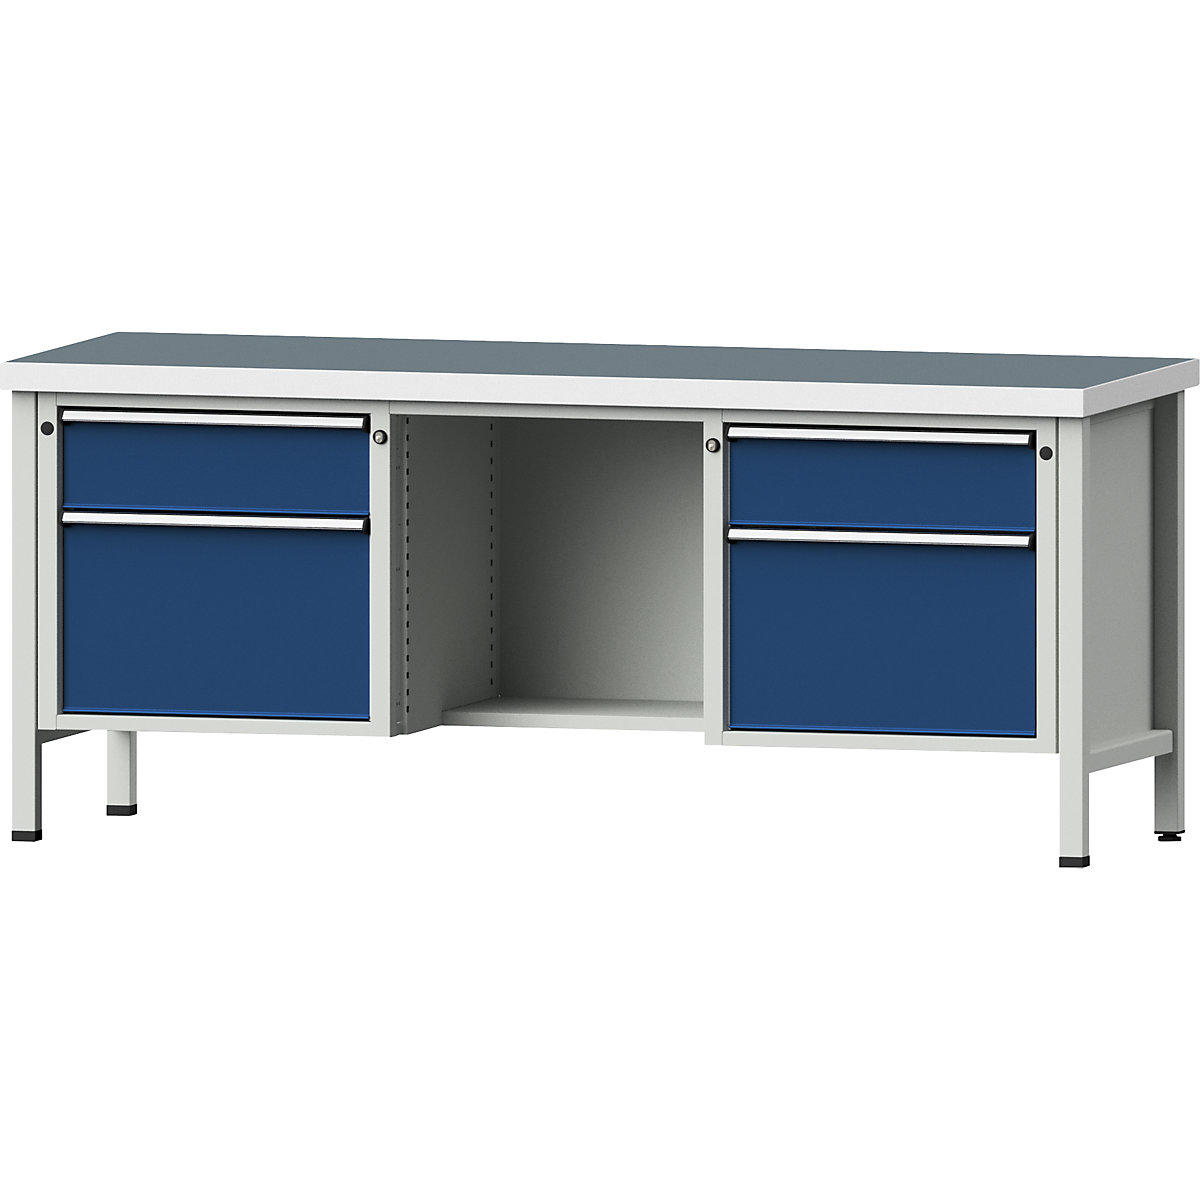 Dílenský stůl s rámovou konstrukcí – ANKE, zásuvky 2 x 180 mm, 2 x 360 mm, ½ odkládací police, univerzální deska, plný výsuv-8